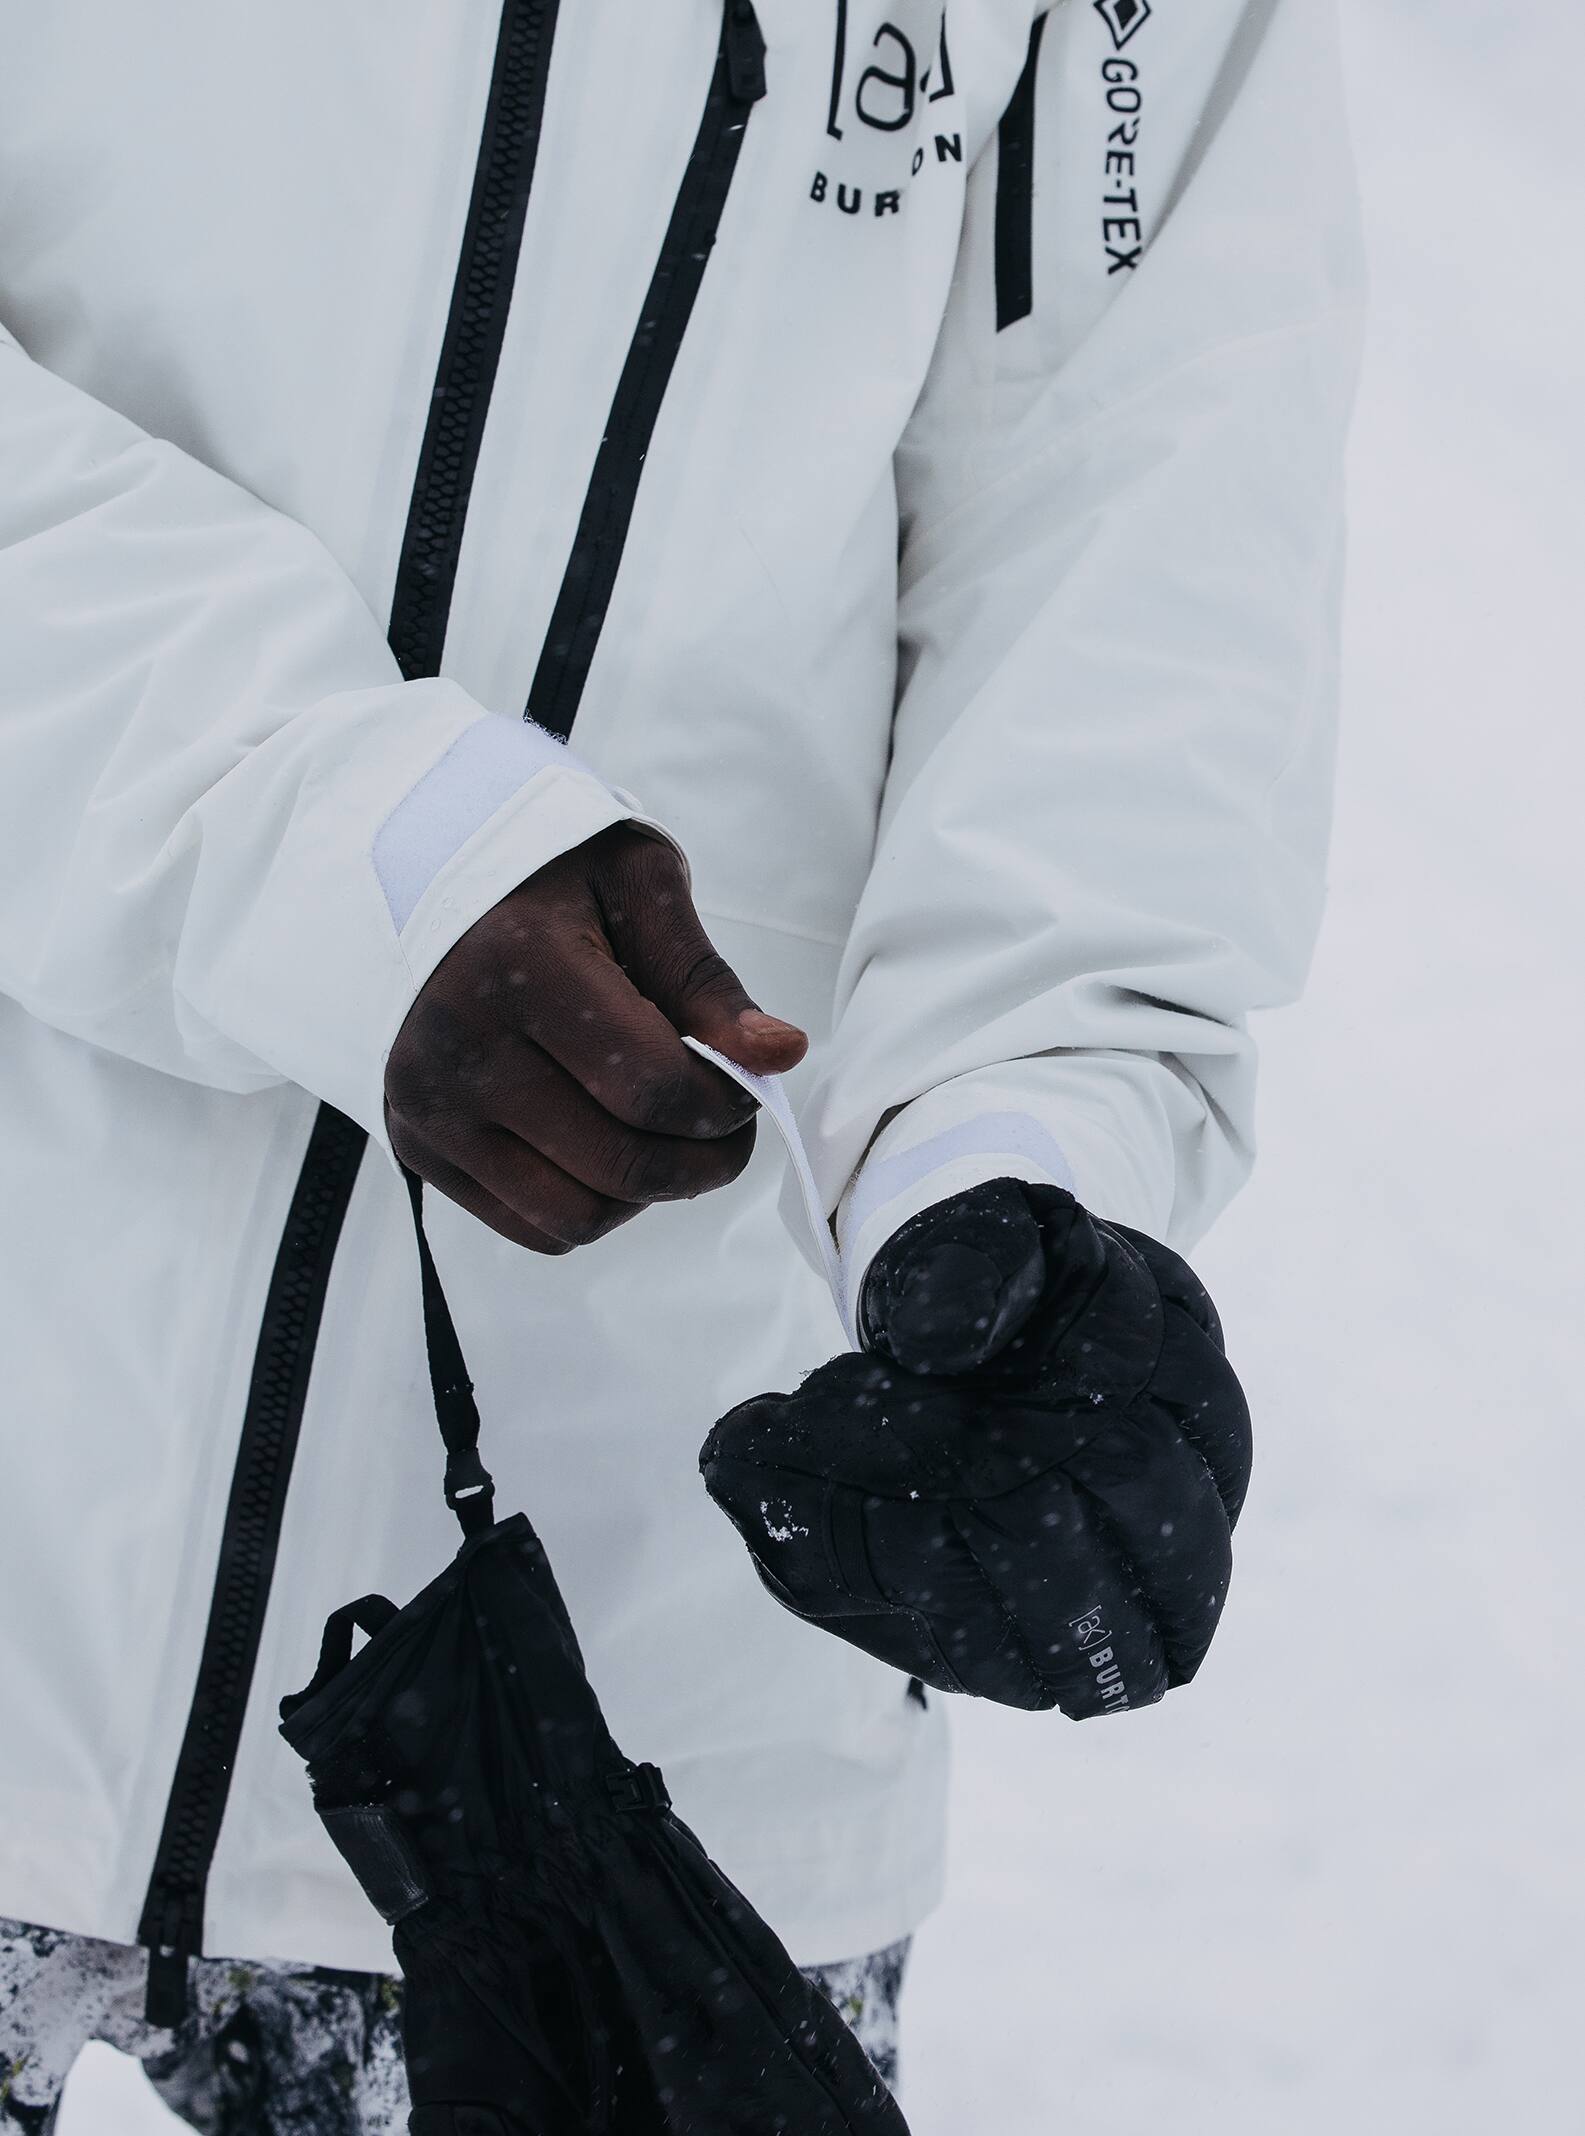 Men's [ak] Cyclic GORE‑TEX 2L Jacket | Burton.com Winter 2023 US